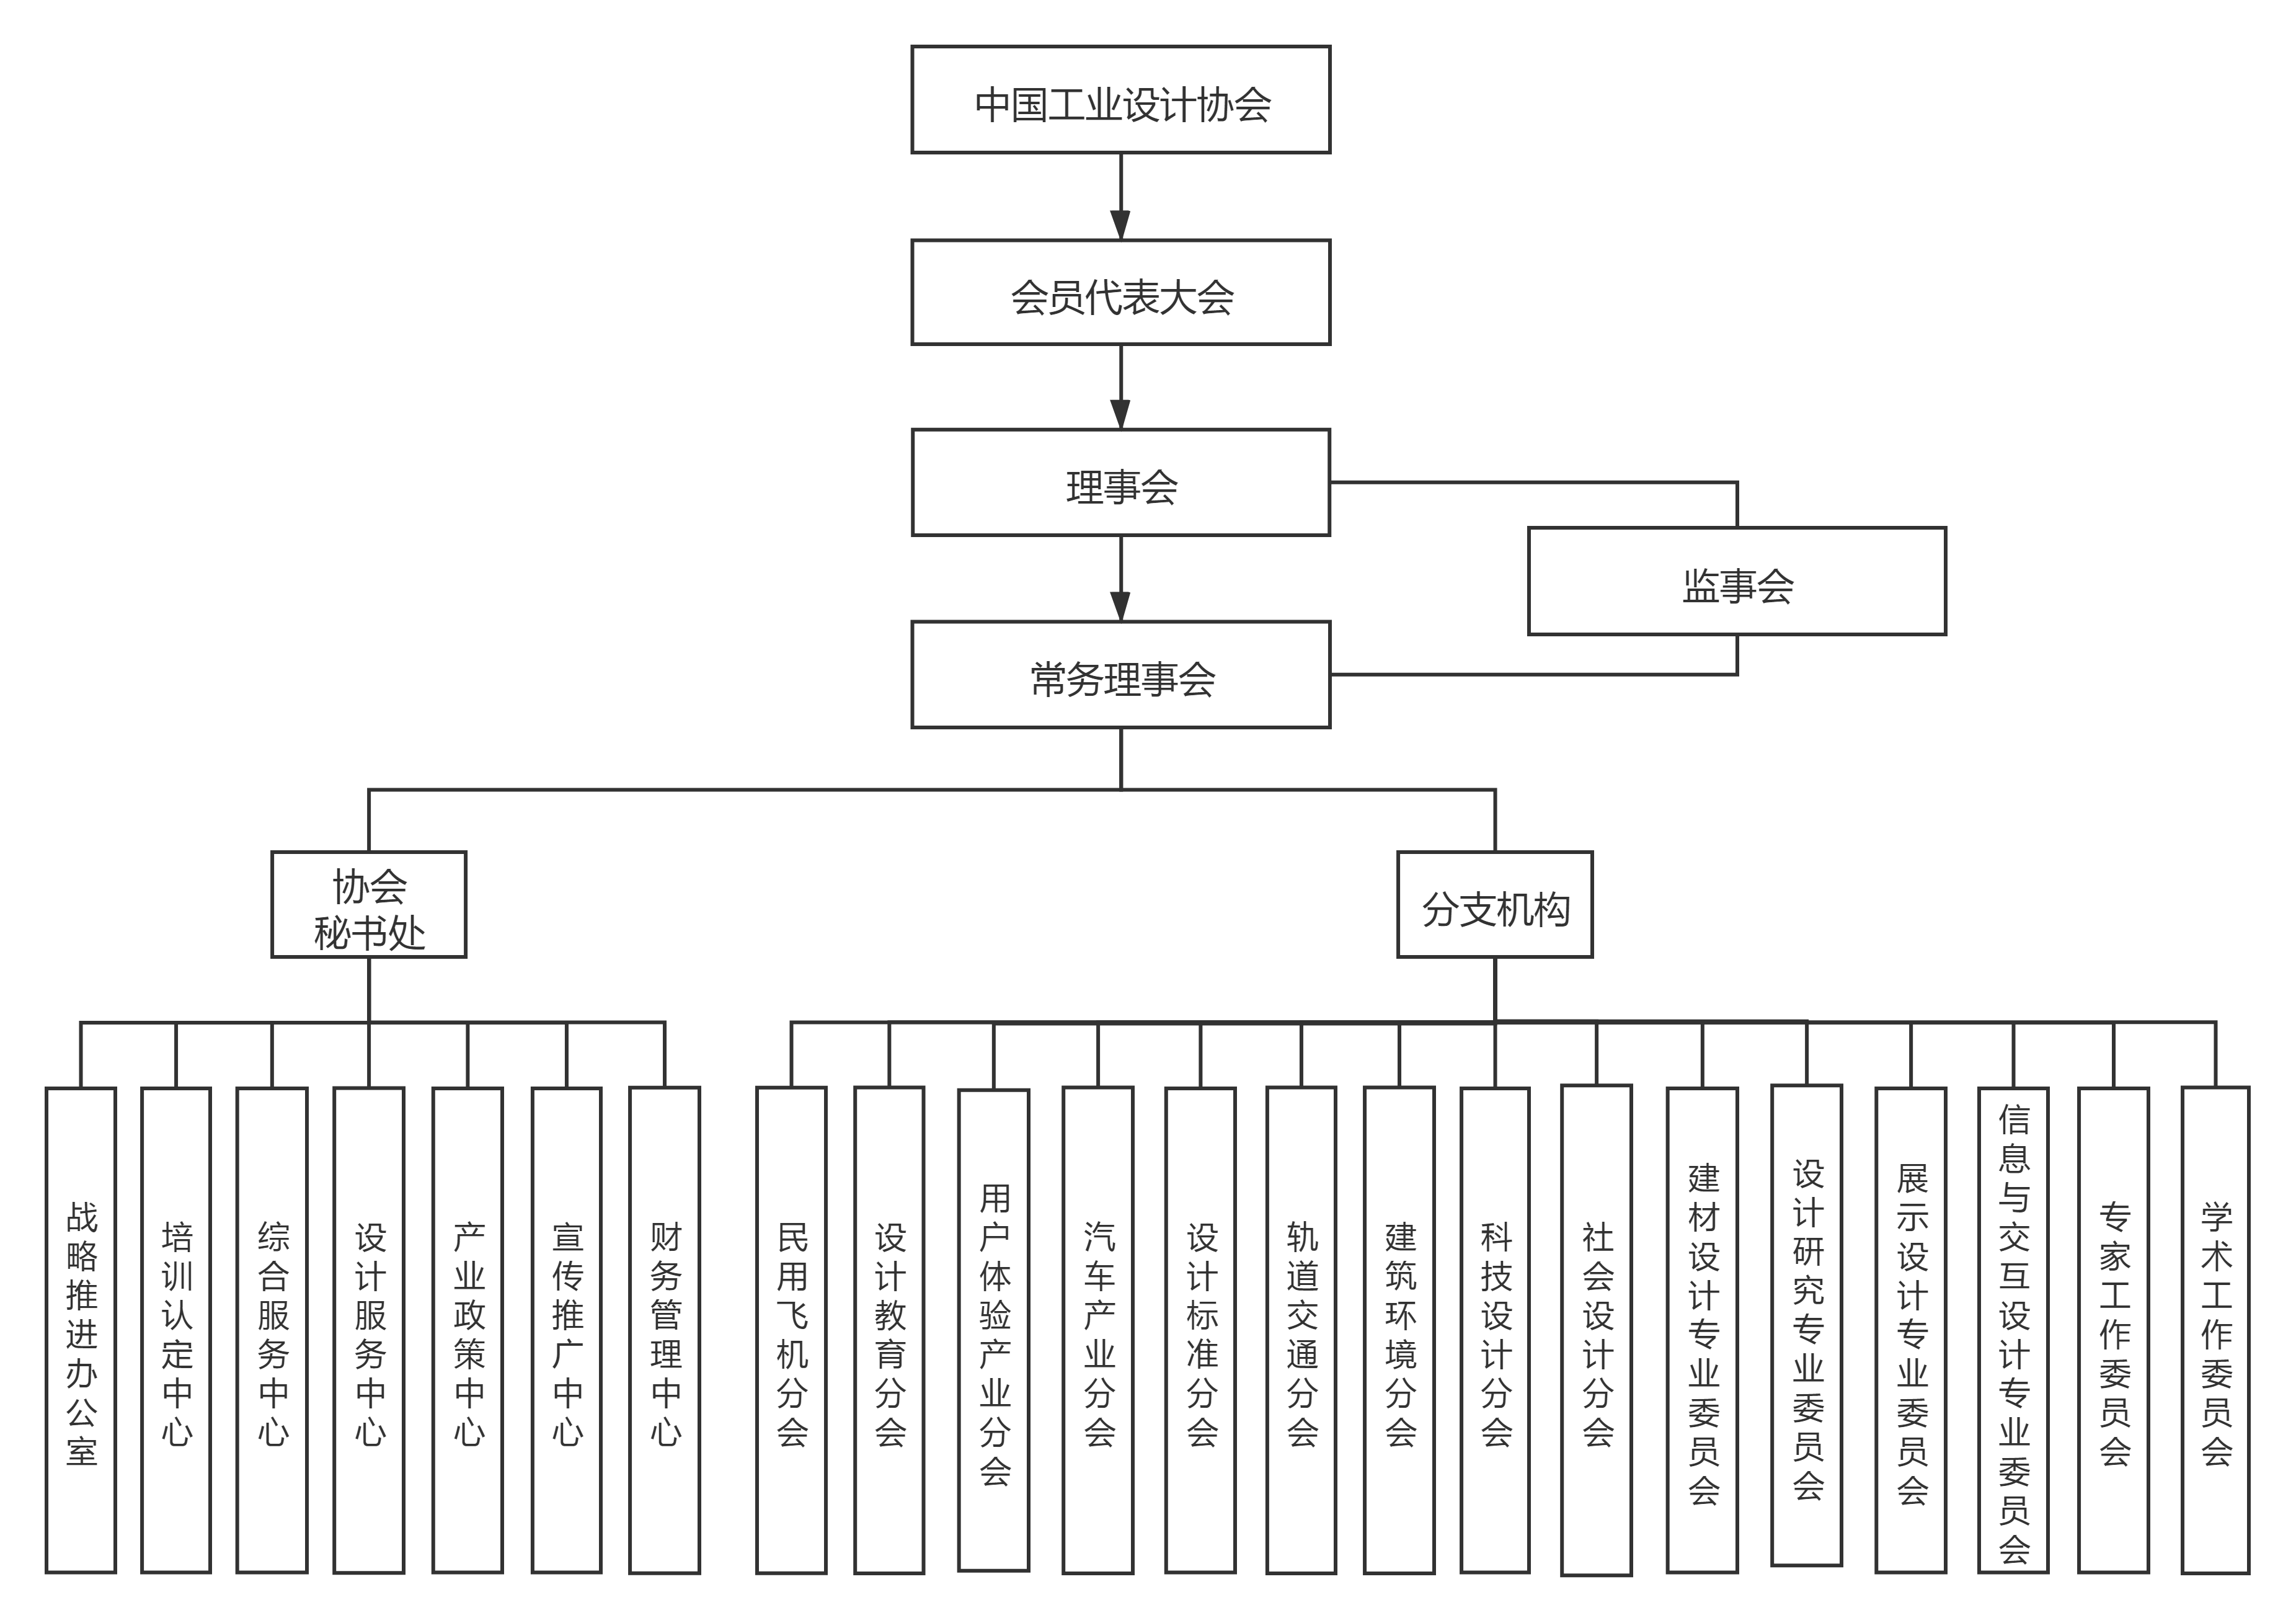 中国工业设计协会组织架构图.png